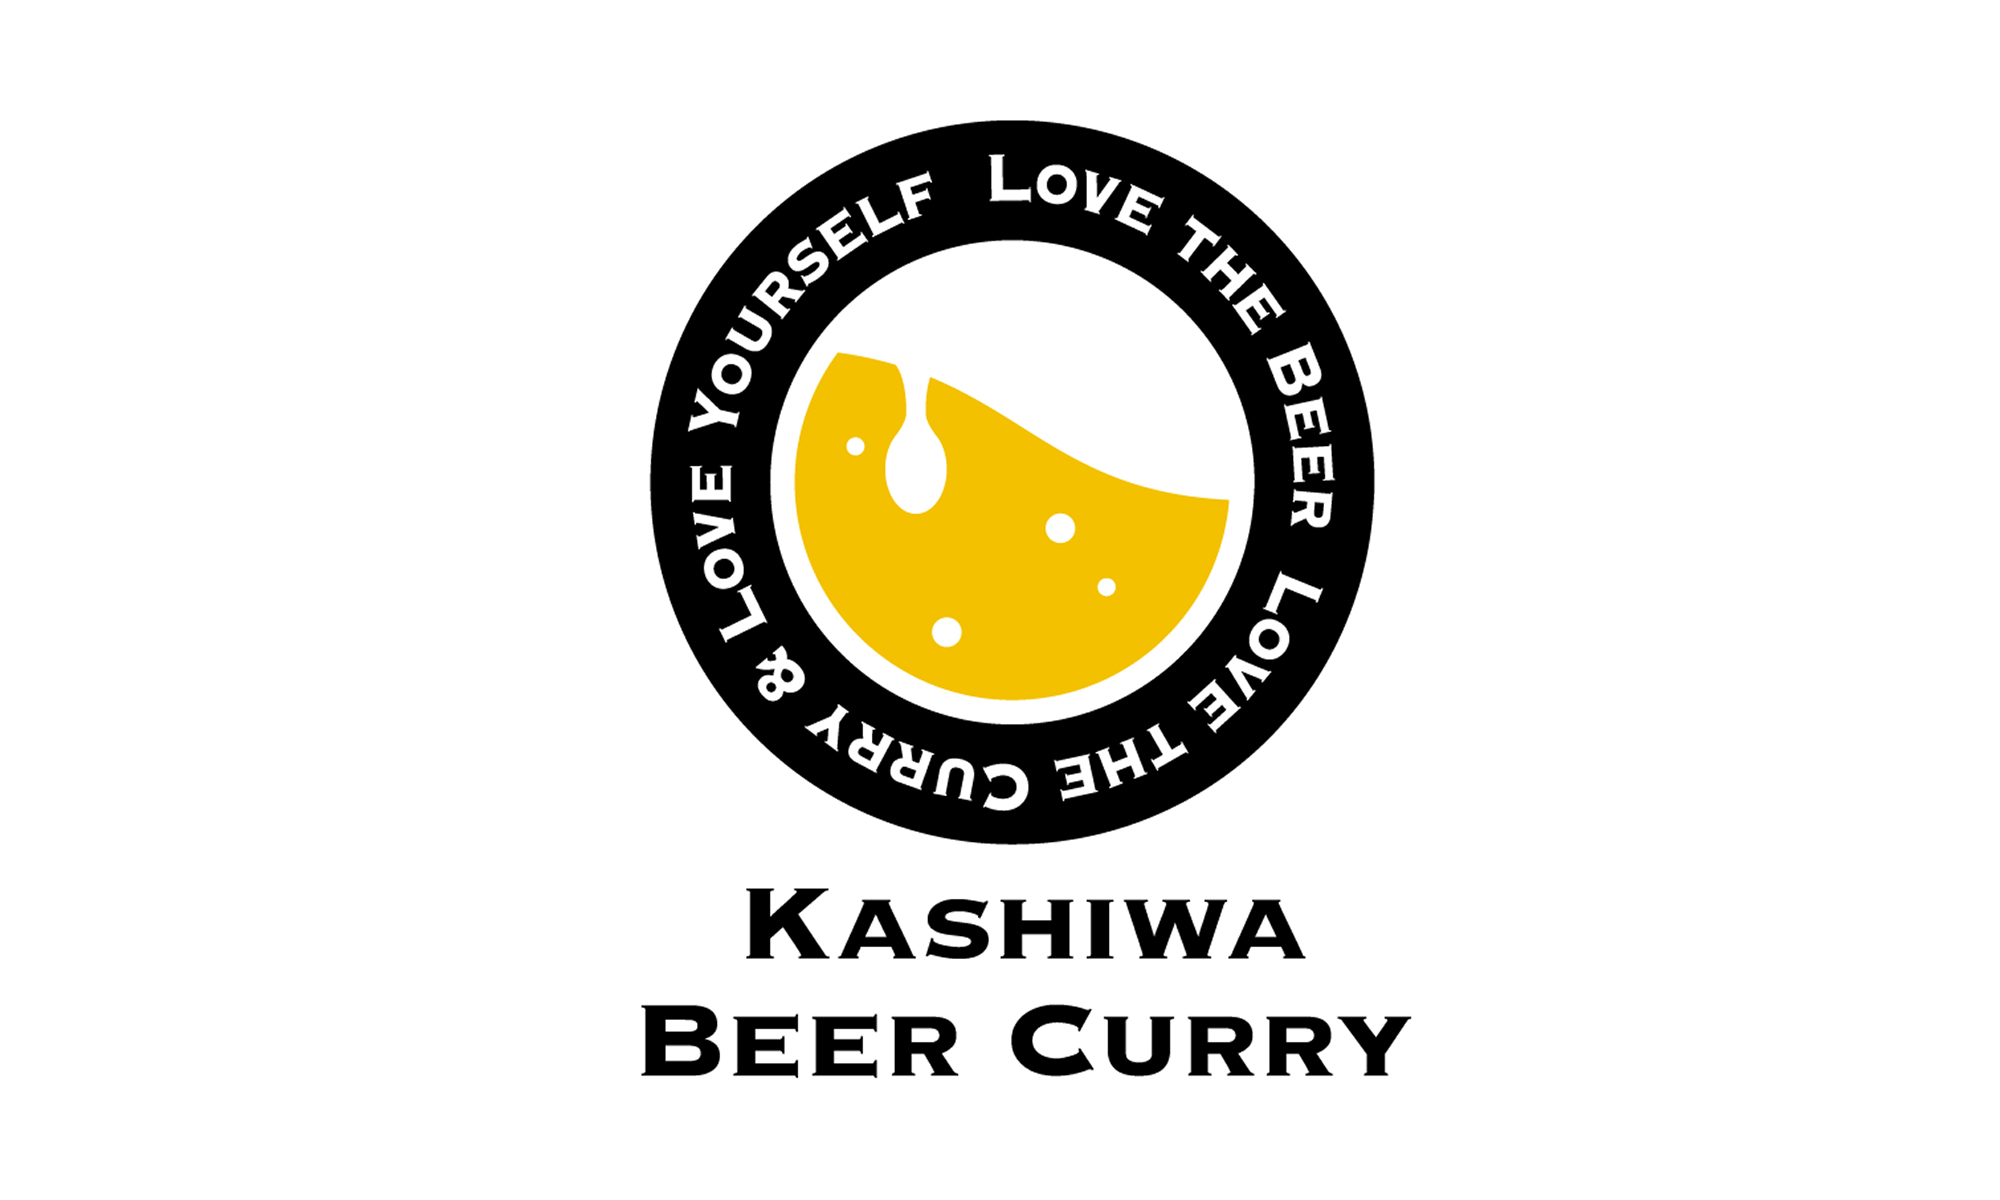 KASHIWA BEER CURRY LOGO